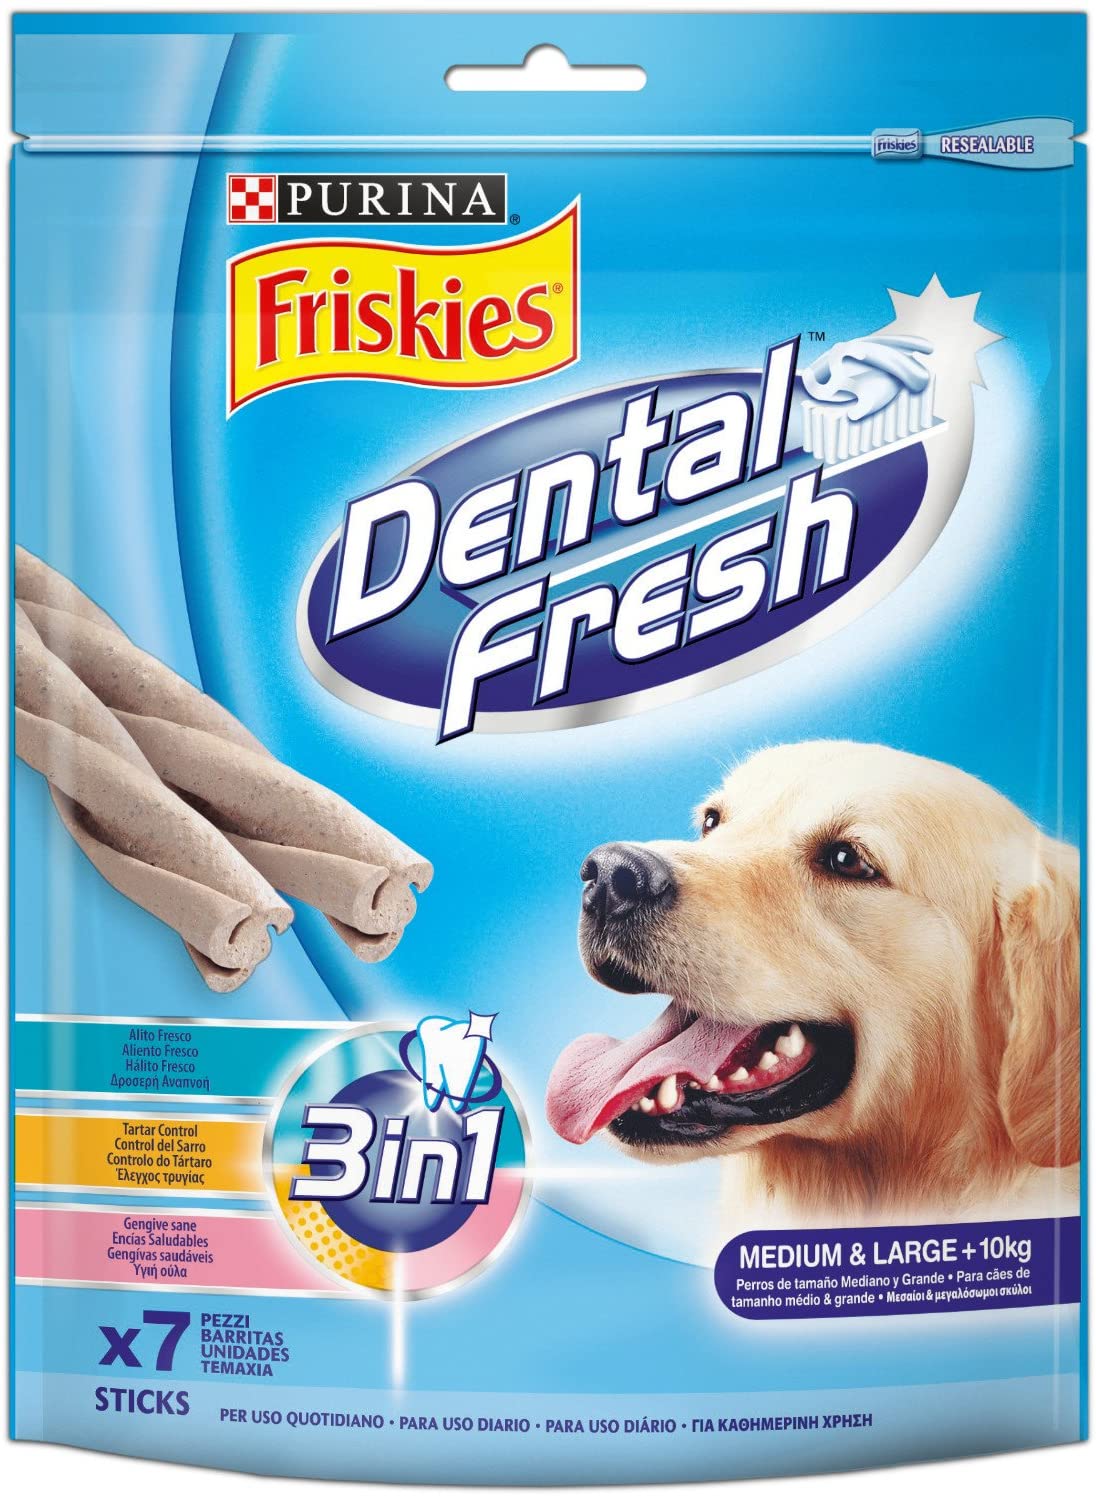  Friskies - Dental fresh Alimento Completo para Perros Medianos Y grandes, 180 g 